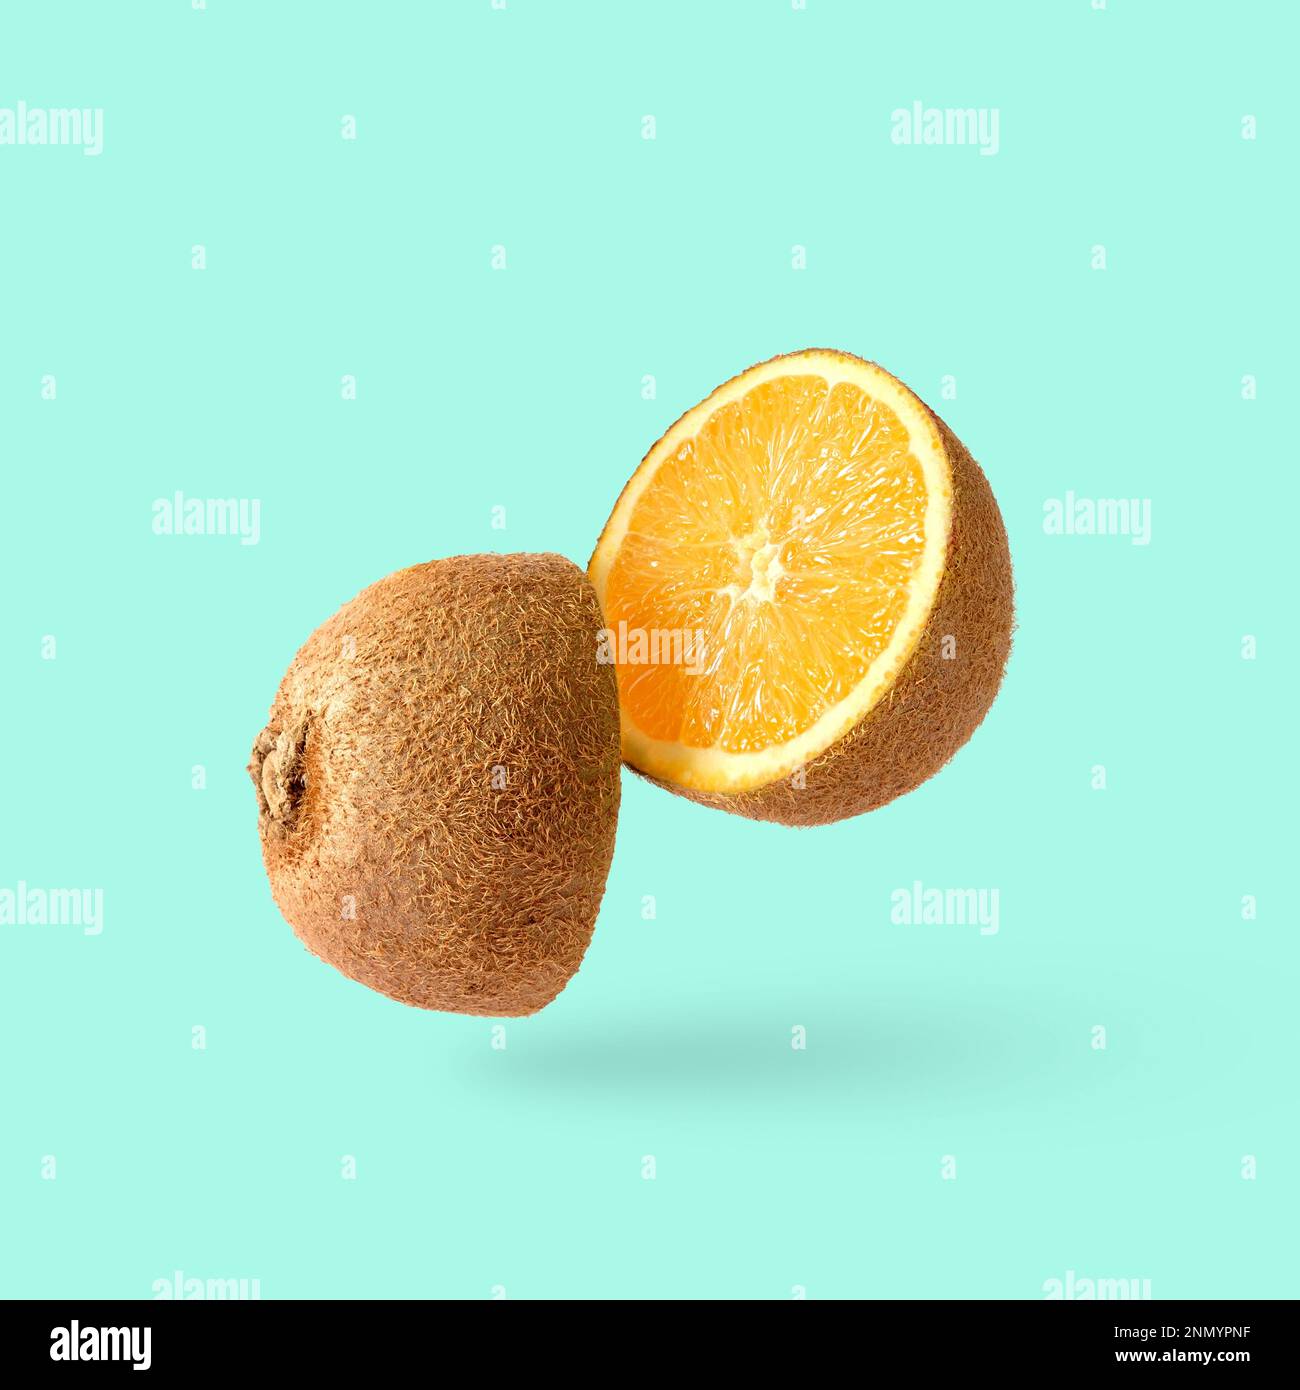 Tagliare il kiwi e dentro un arancia. Joke minimo pop art sorpresa divertente poster. Foto di alta qualità Foto Stock